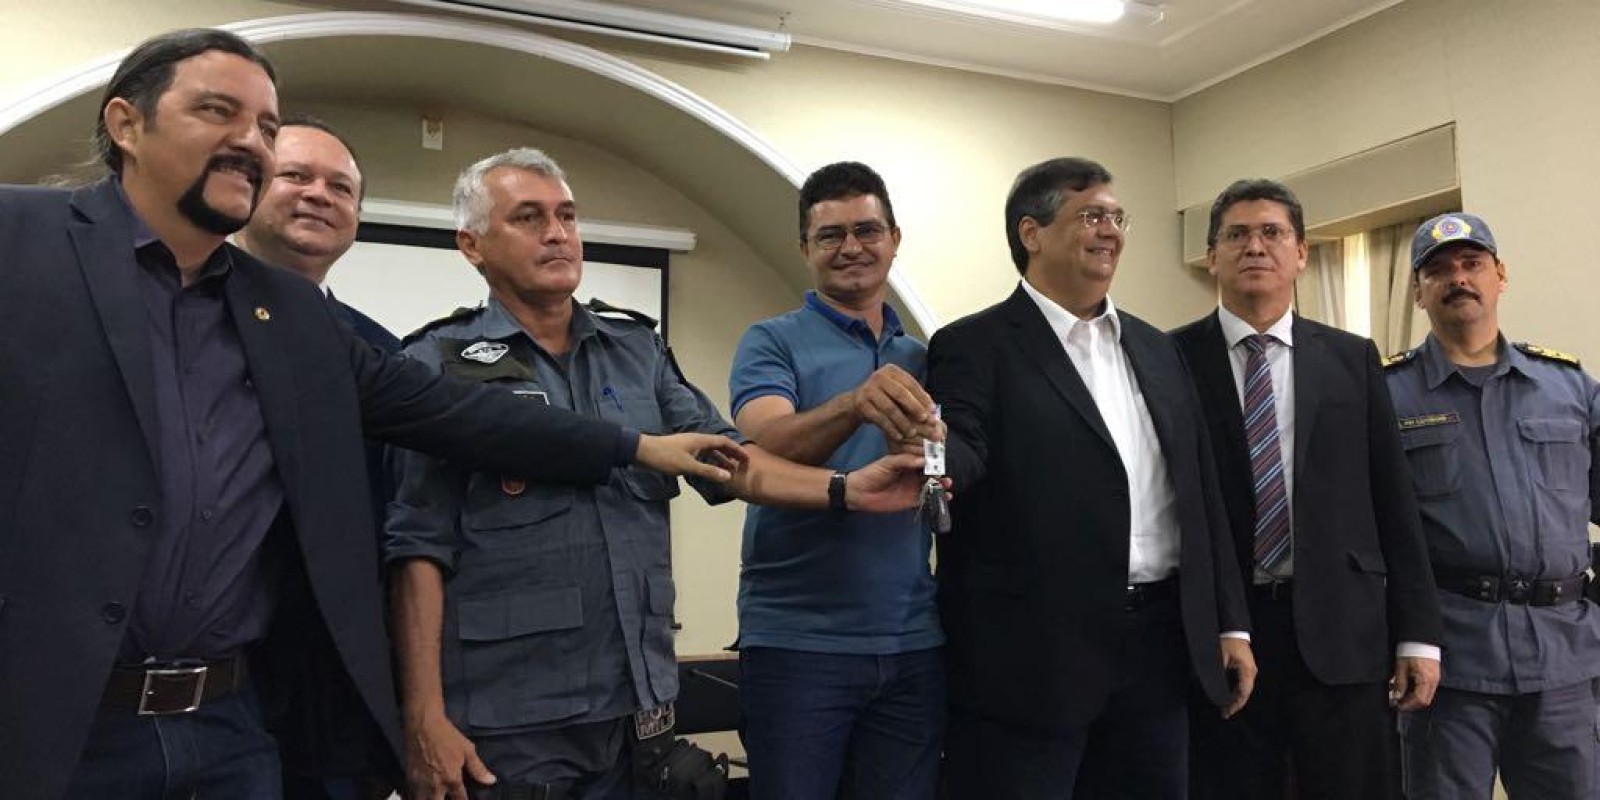 O município recebeu uma viatura 0 km do Governo do Maranhão